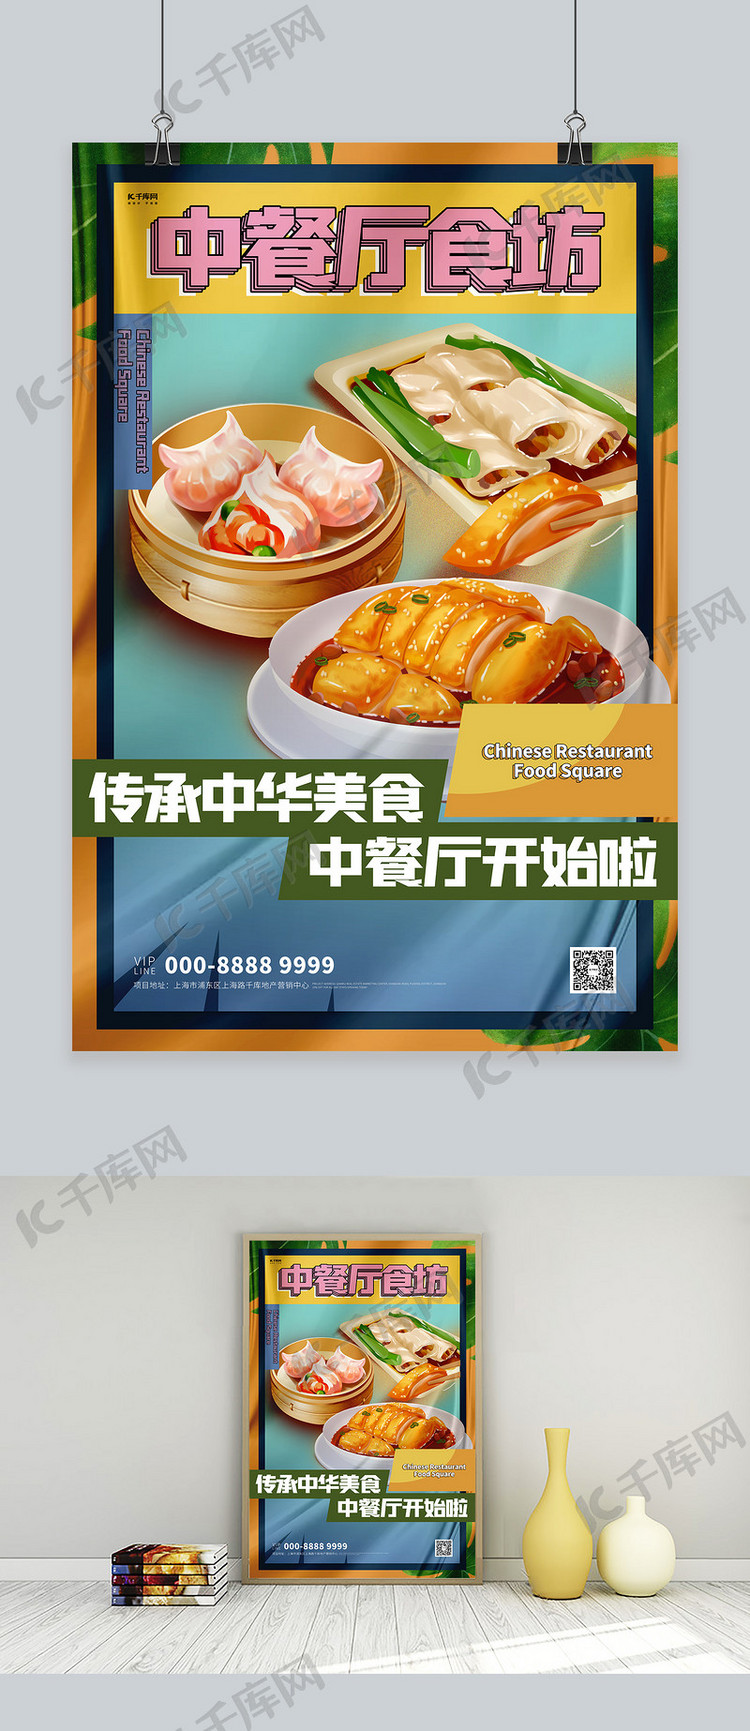 中餐厅美食橙色创意海报